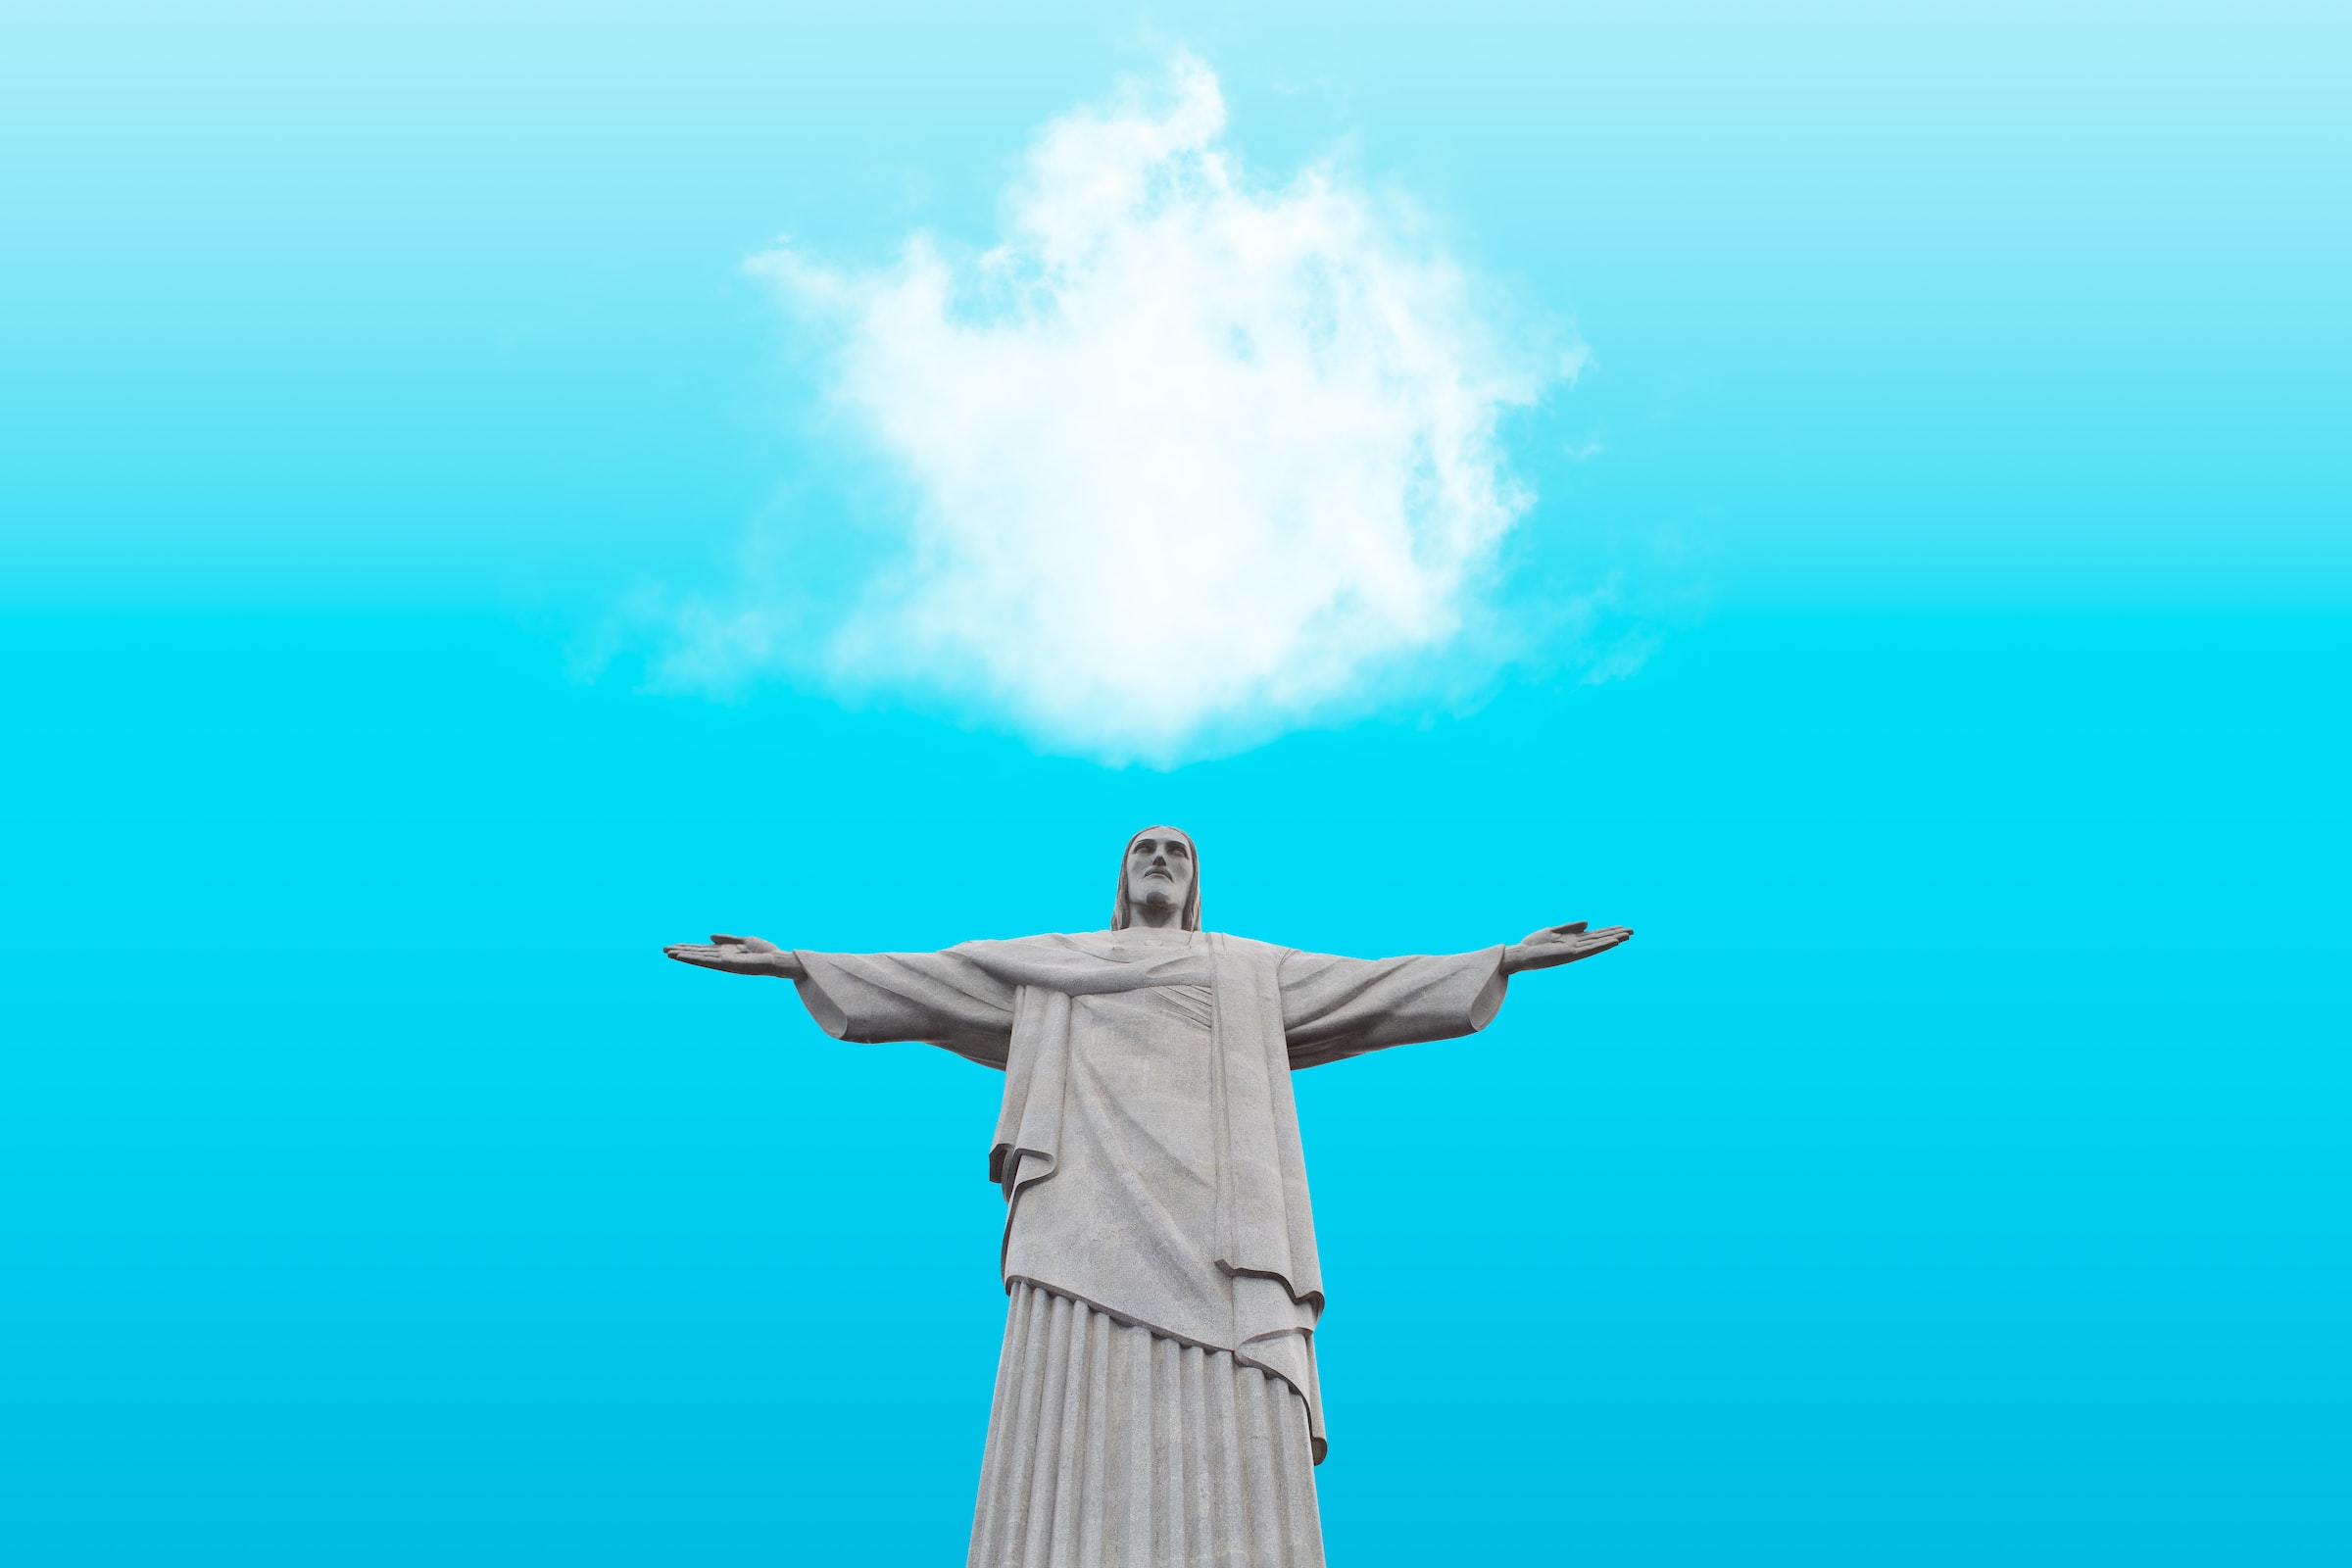 Rio de Janeiro, Brezilya'yı ziyaret ettiğinizde yapmanız gereken 9 şey @VisitBrasil